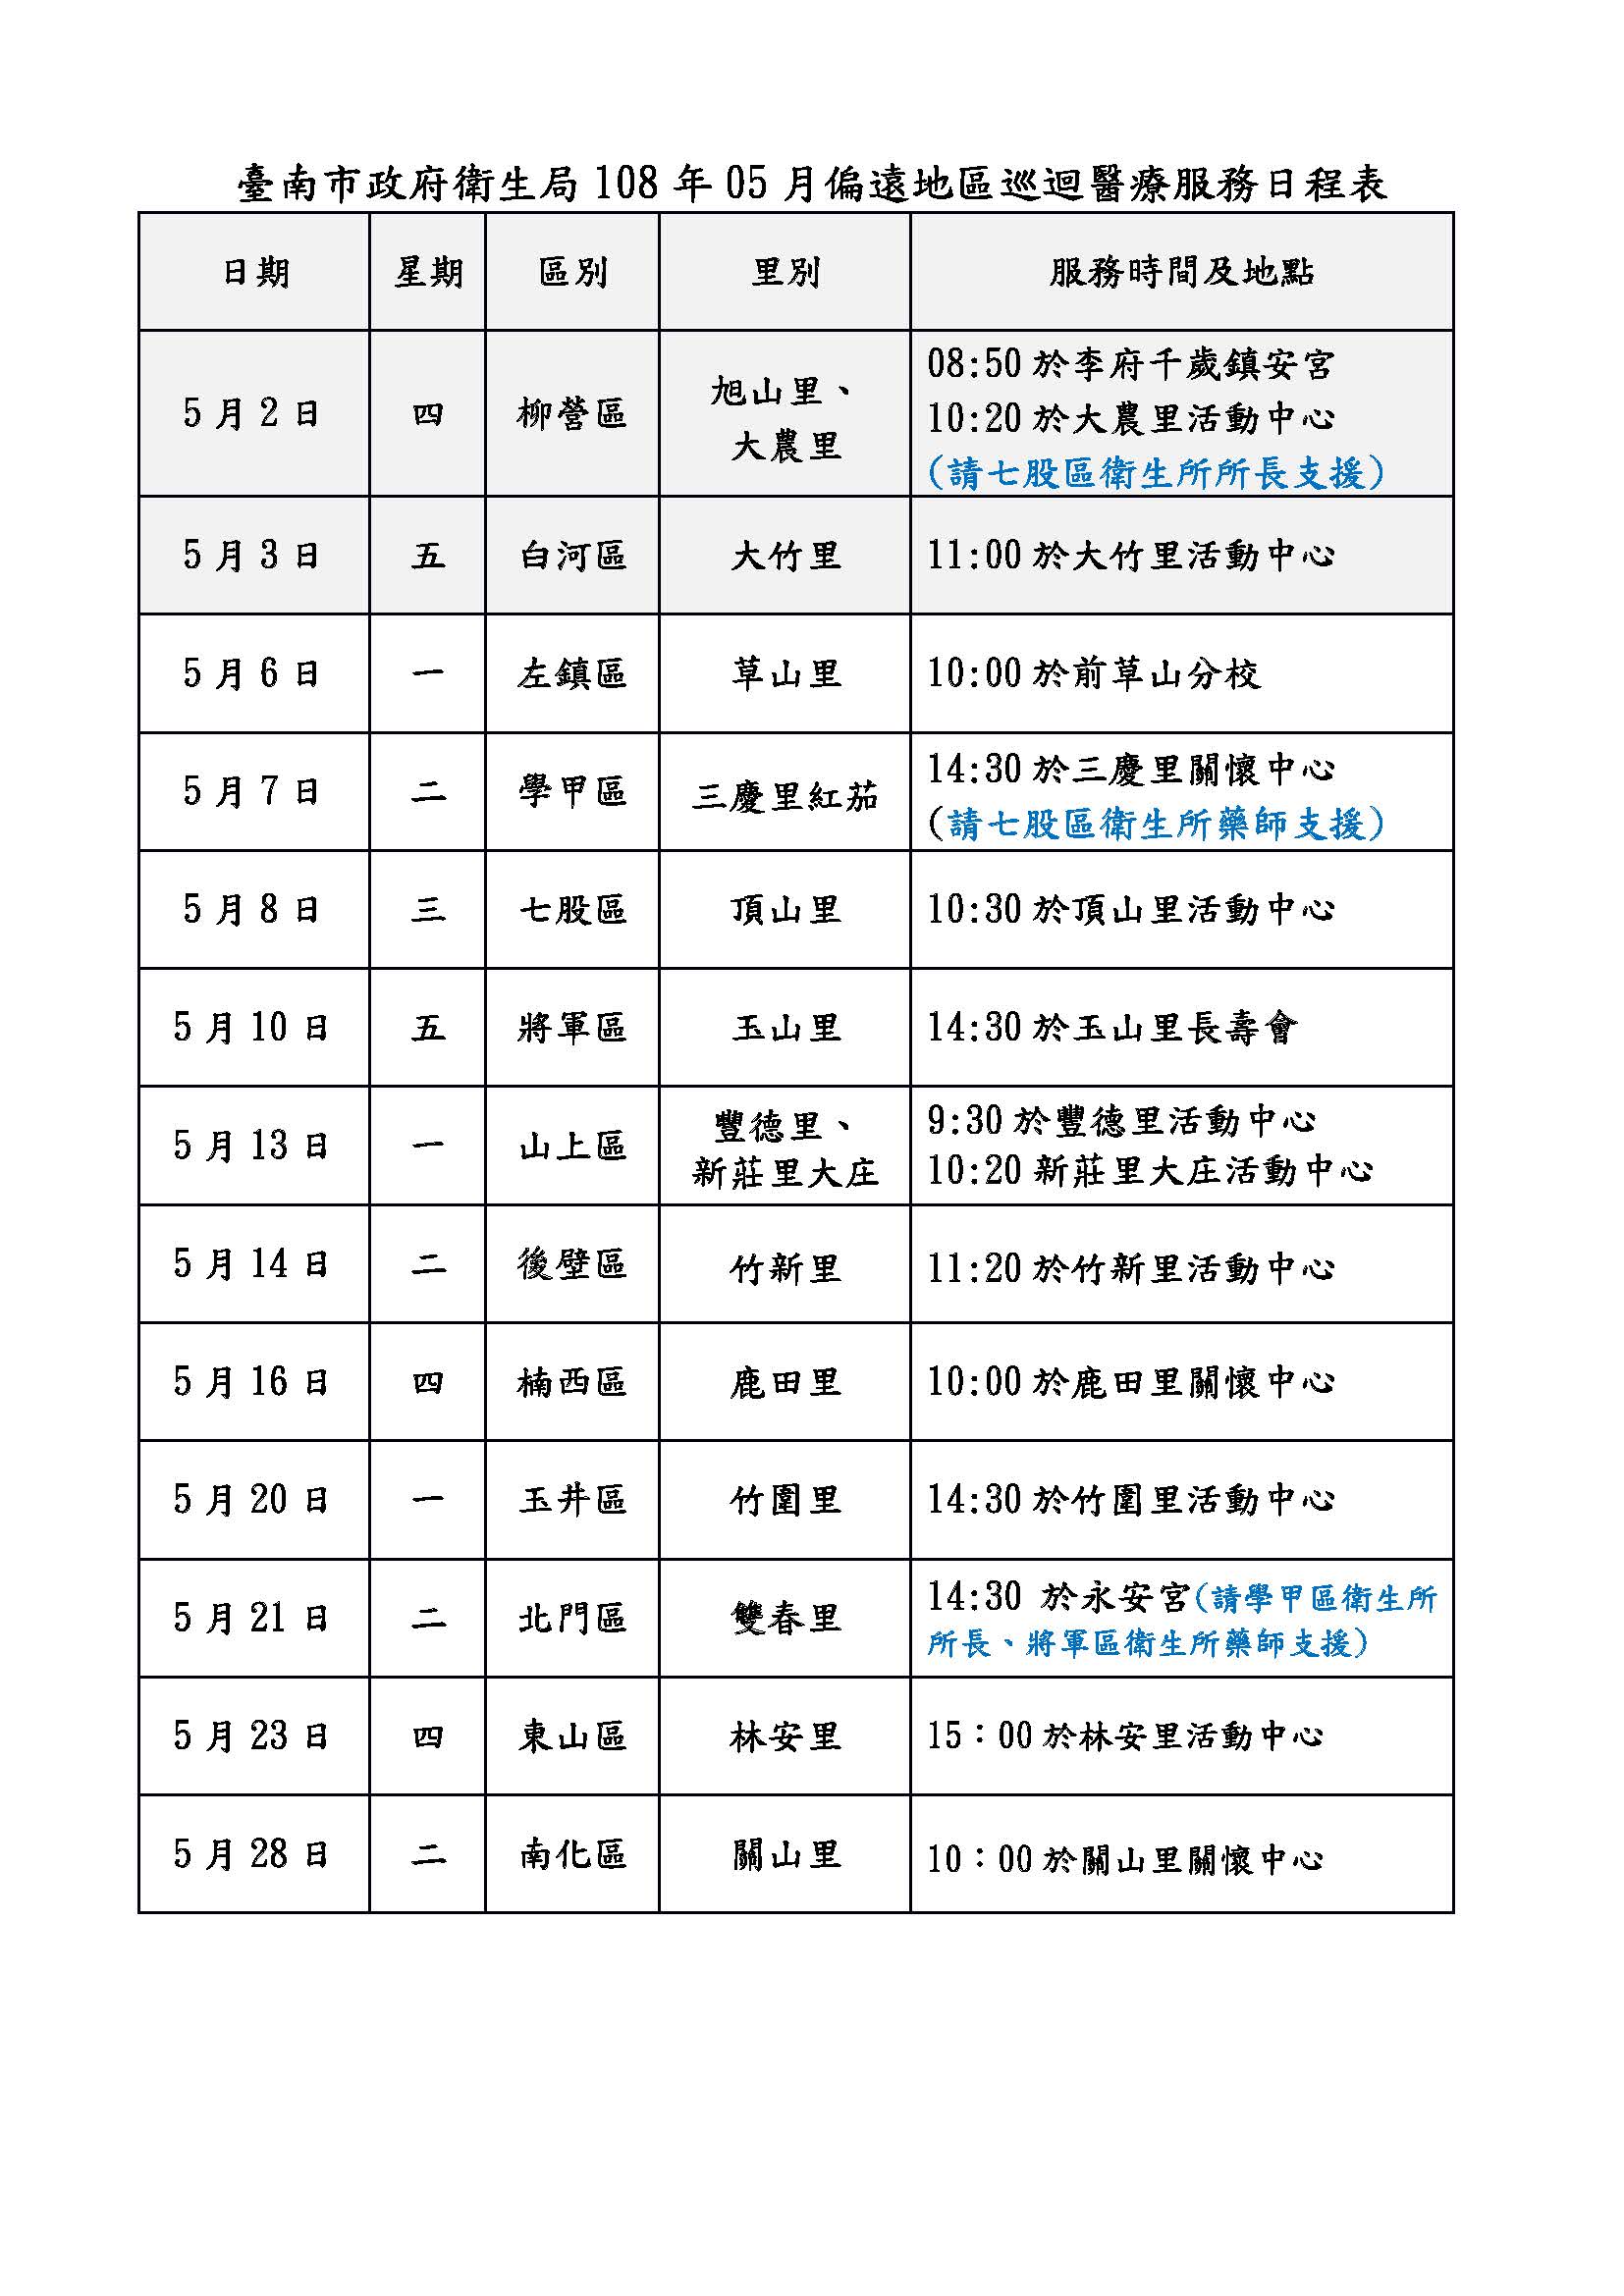 臺南市政府衛生局108年05月偏遠地區巡迴醫療服務日程表